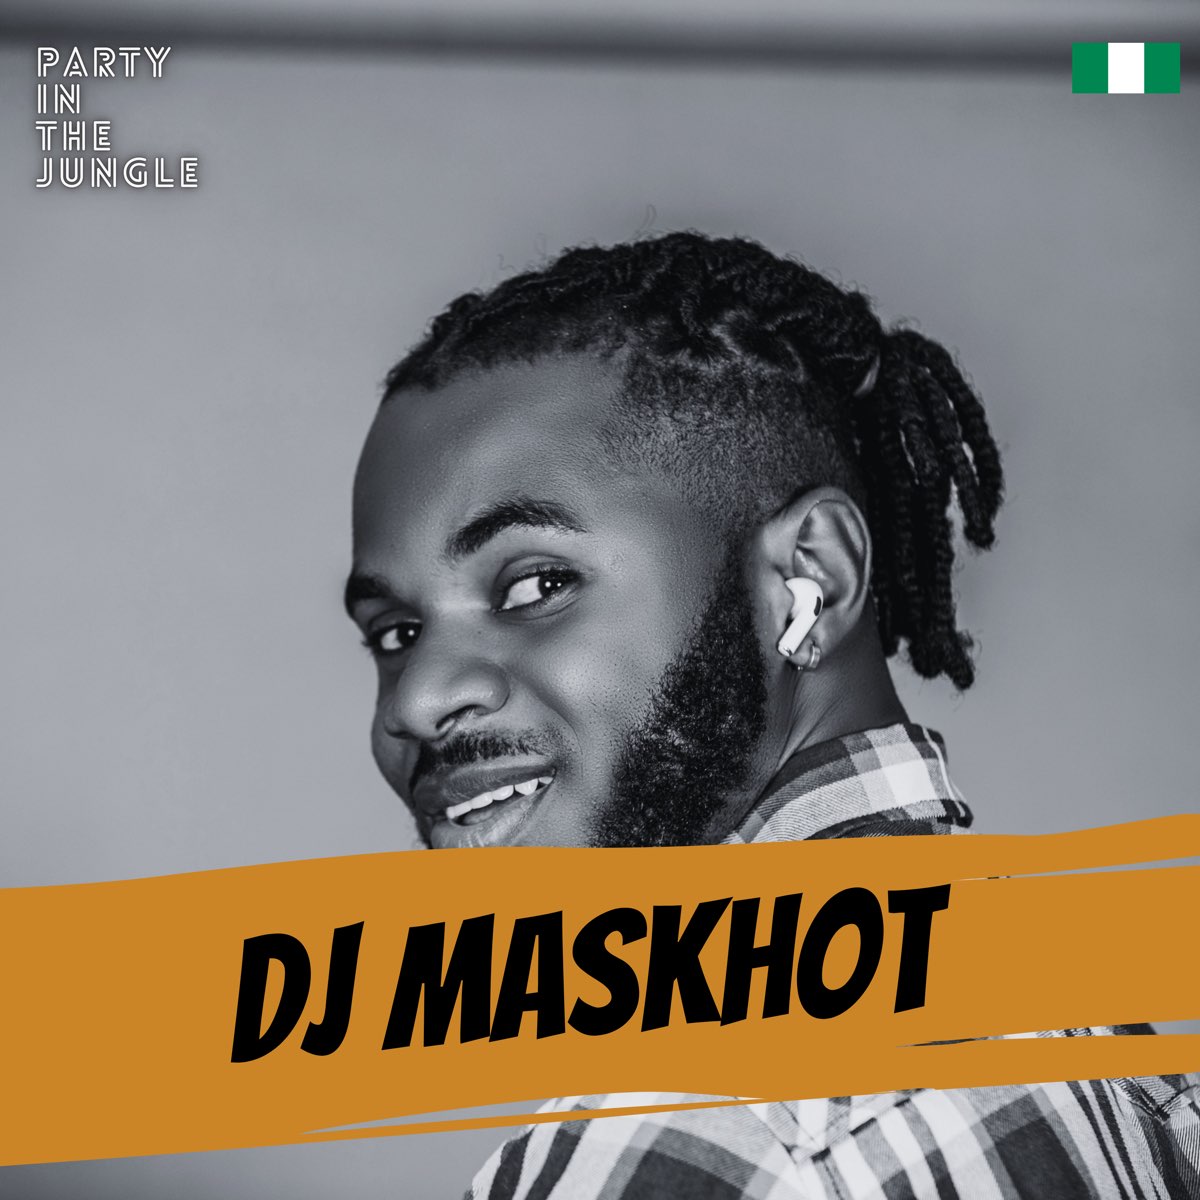 ‎Party In The Jungle: DJ Maskhot, Mar 2023 (DJ Mix) by DJ Maskhot on ...